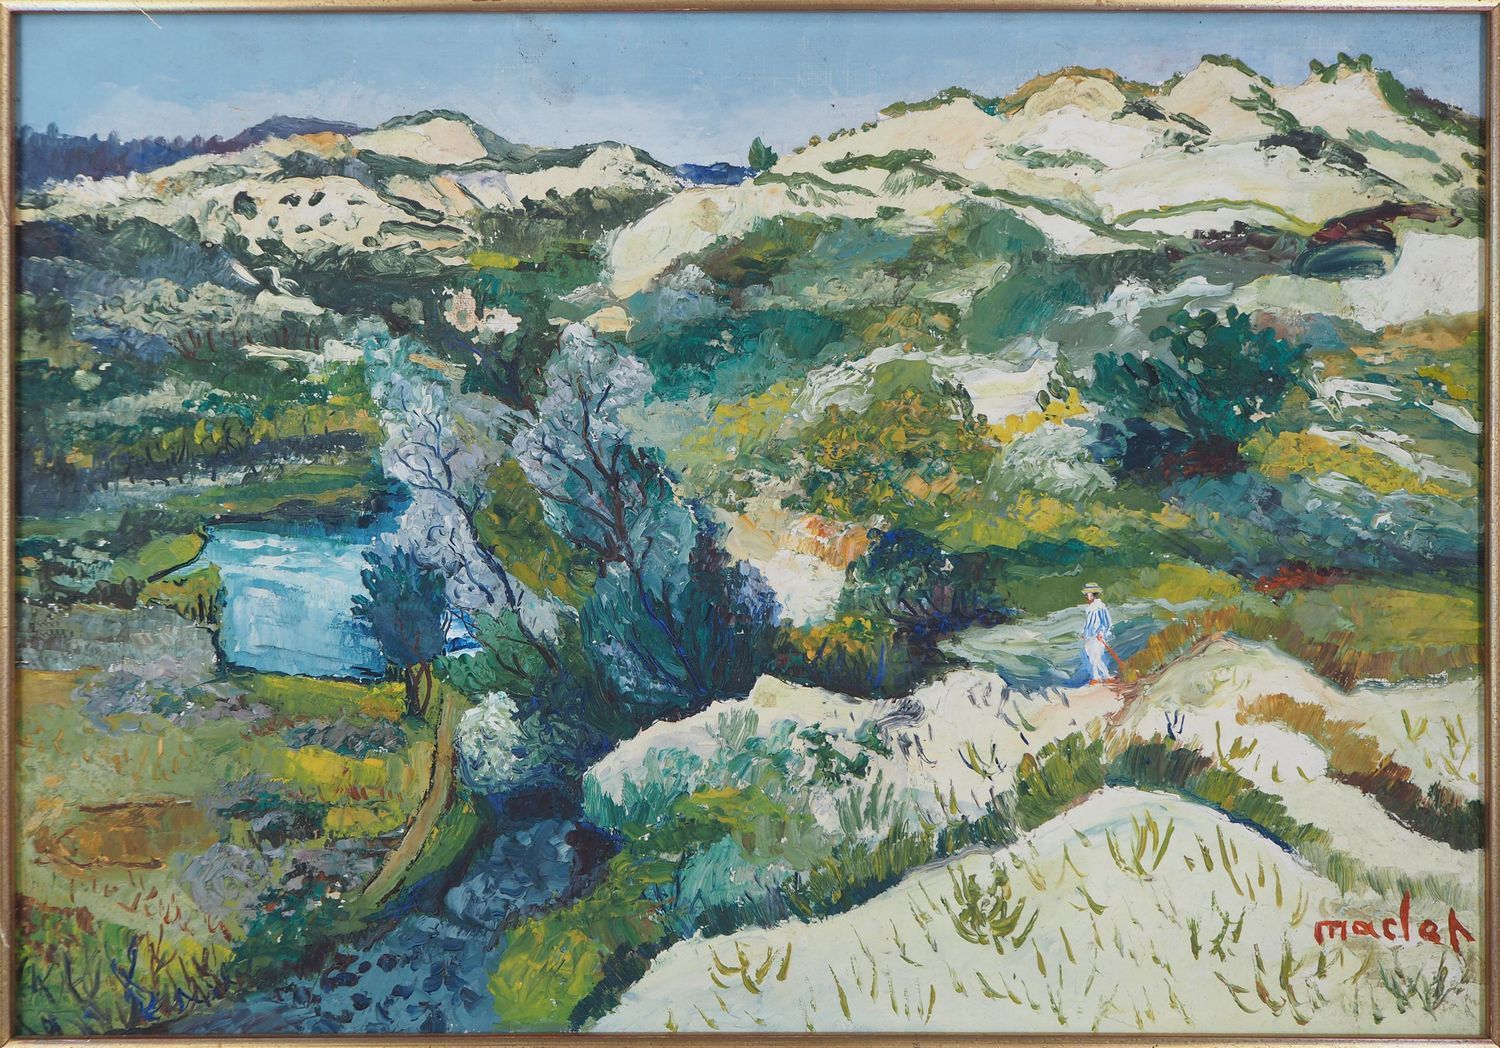 Élisée MACLET Elisée MACLET

Provincial Landscape, c. 1926

Oil on canvas

Signe&hellip;